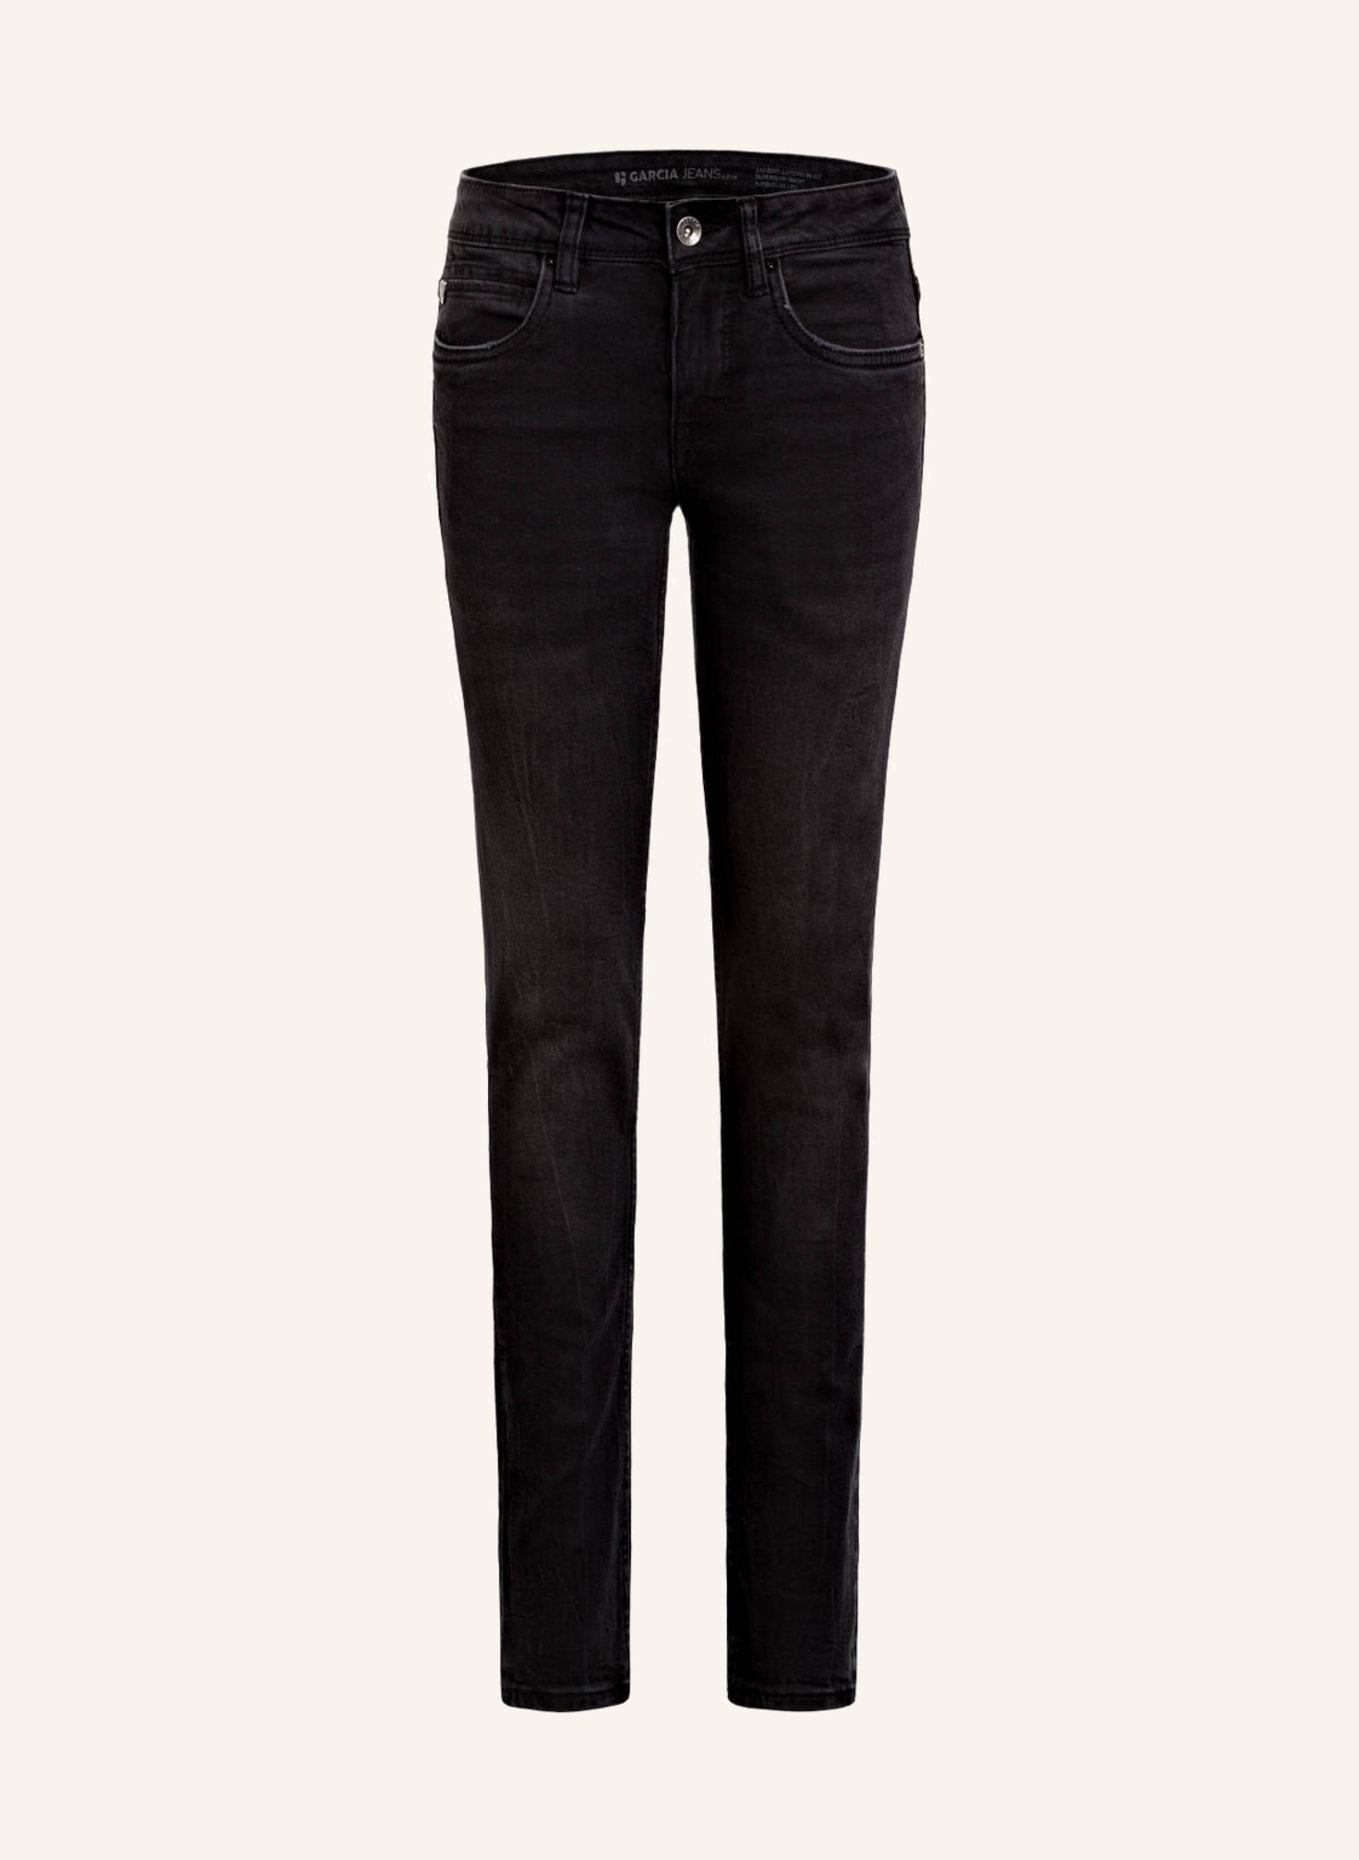 GARCIA Jeans XANDRO Super Slim Fit, Farbe: DARK USED (Bild 1)